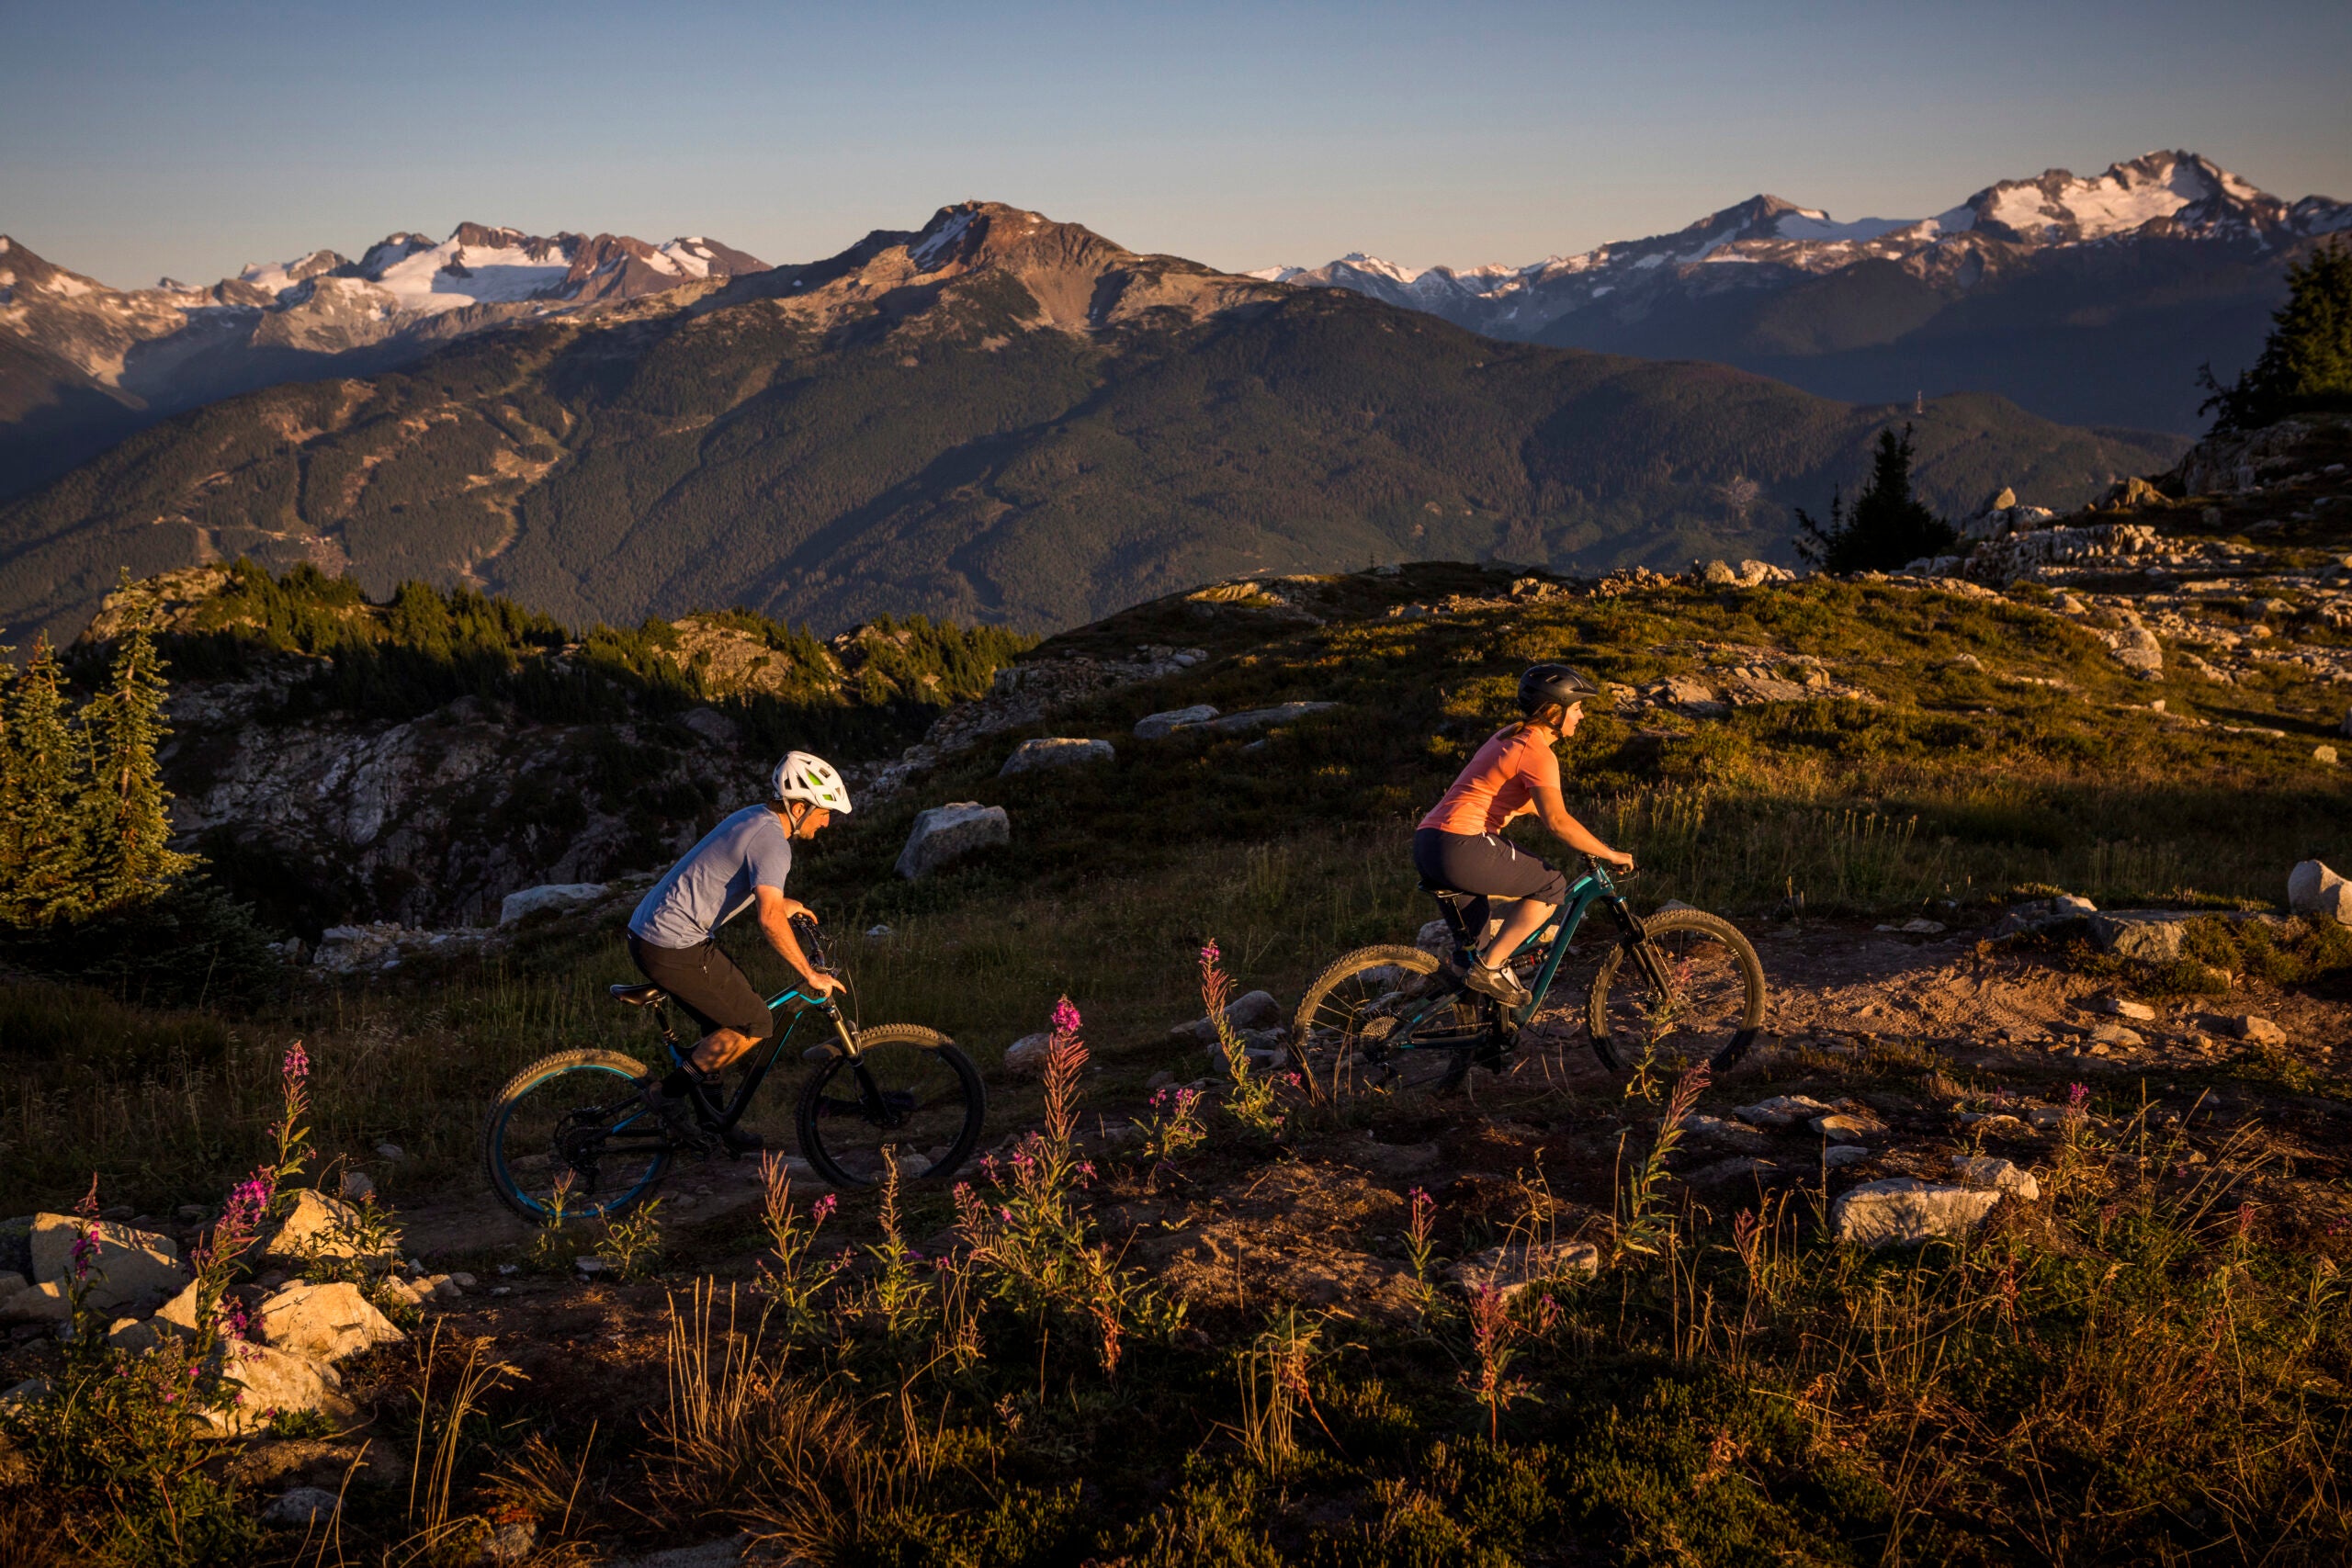 Mountain biking in Whistler, British Columbia.